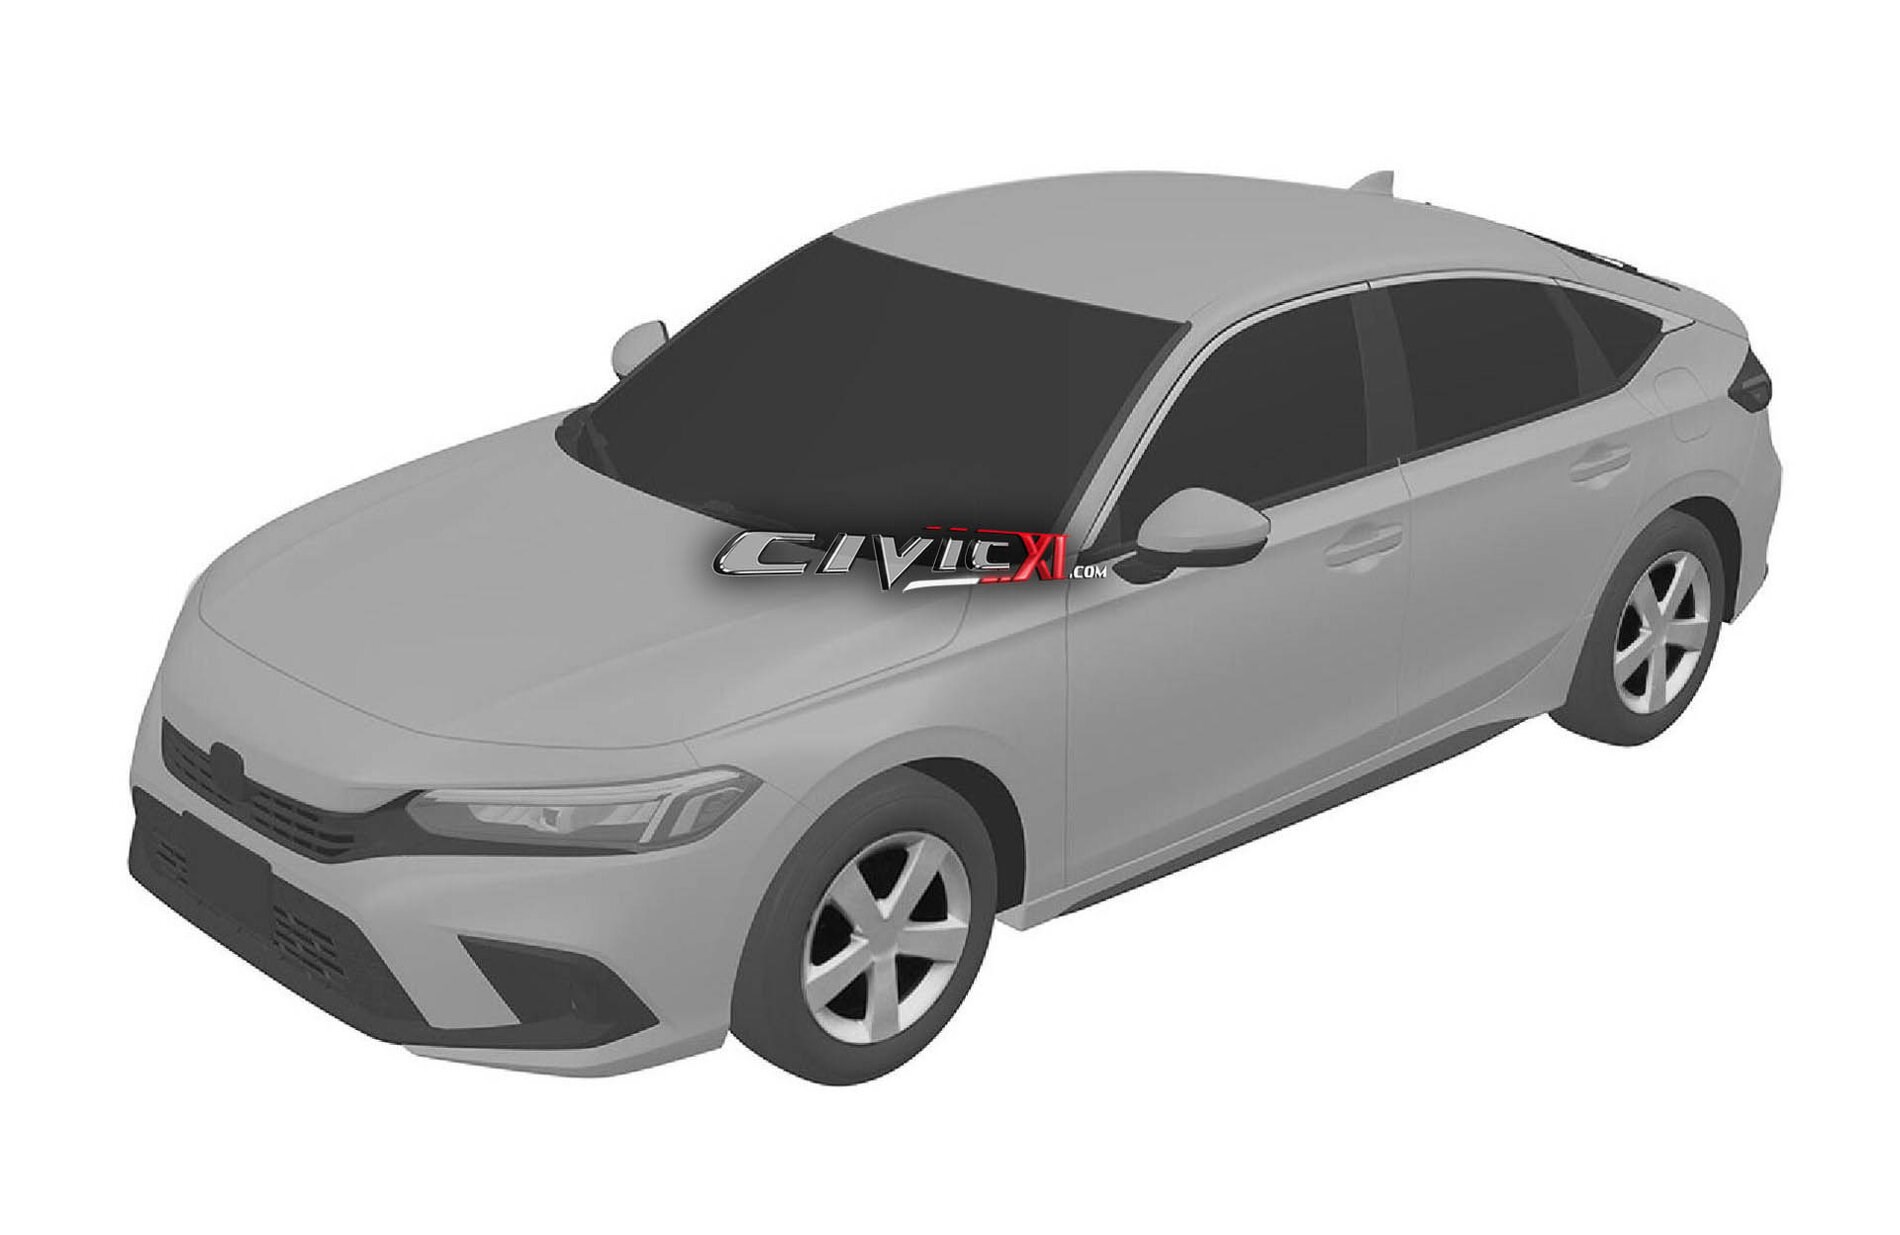 2021 Honda Civic Sedan ve Hatchback'in tasarımı patent görüntüleriyle ortaya çıktı